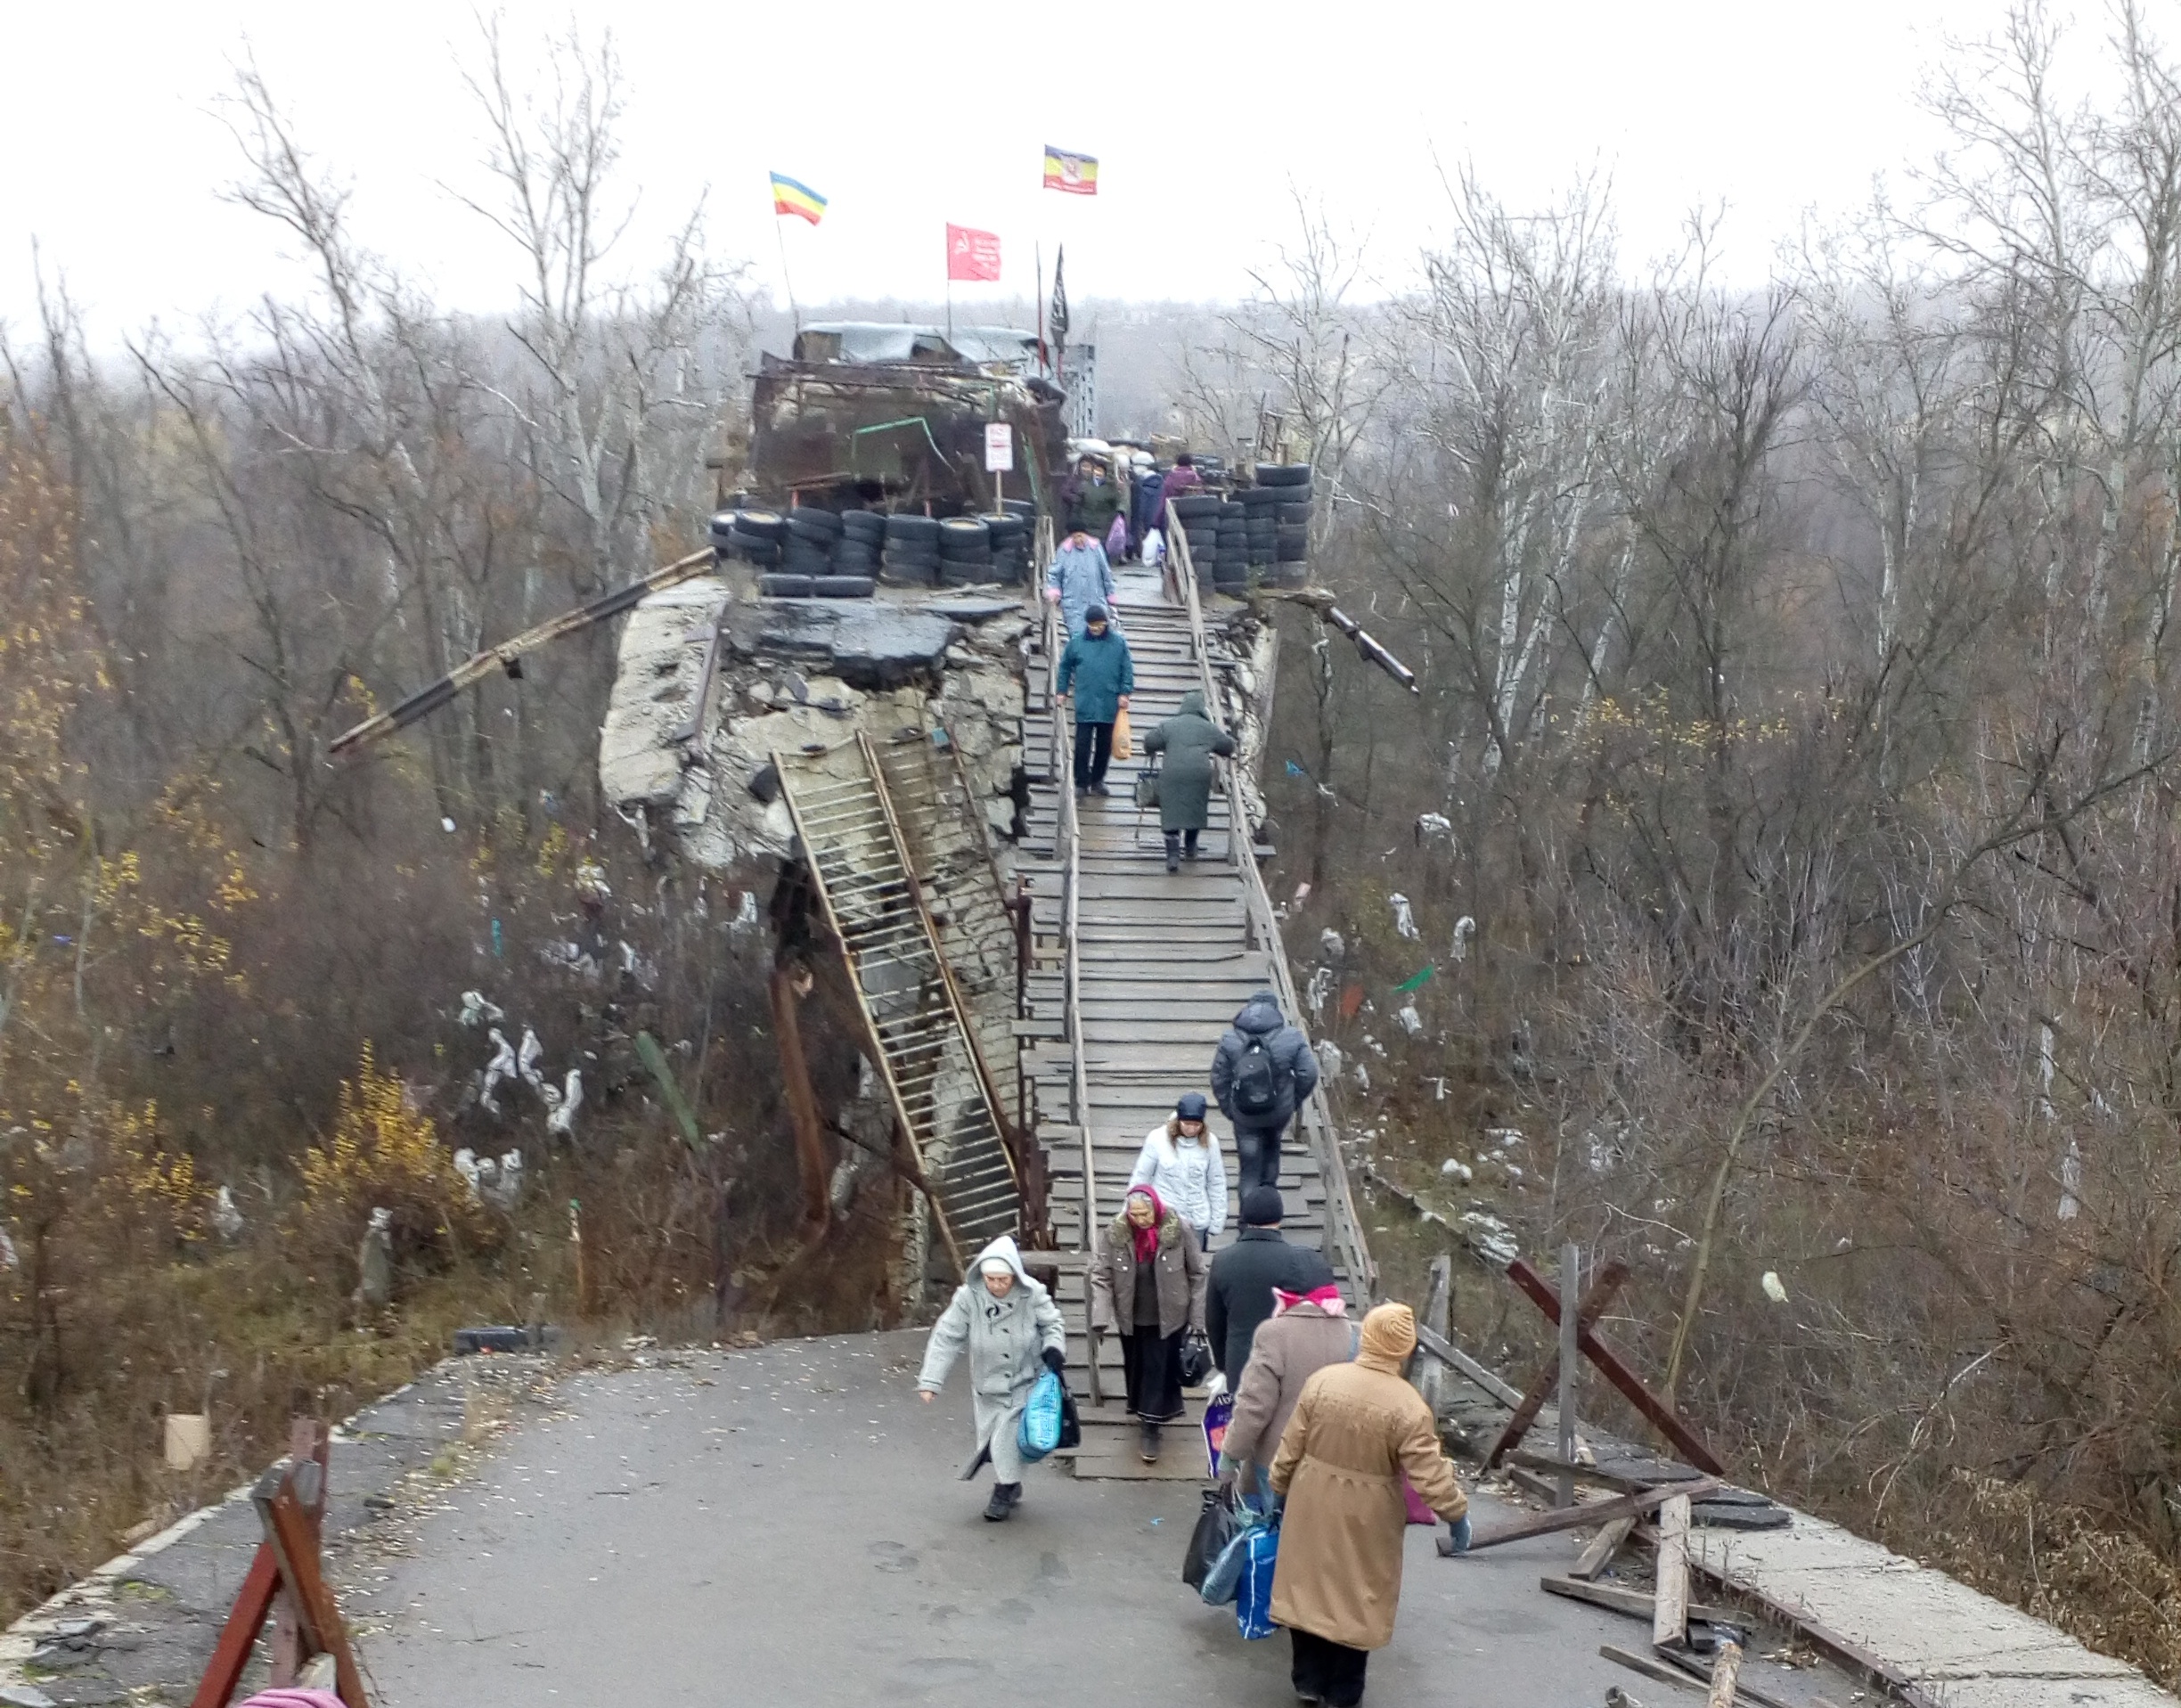 Po ostrzale strategicznych nabrzeży ucierpiał most na Dońcu. Przejście jest możliwe tylko po chybotliwej, drewnianej kładce